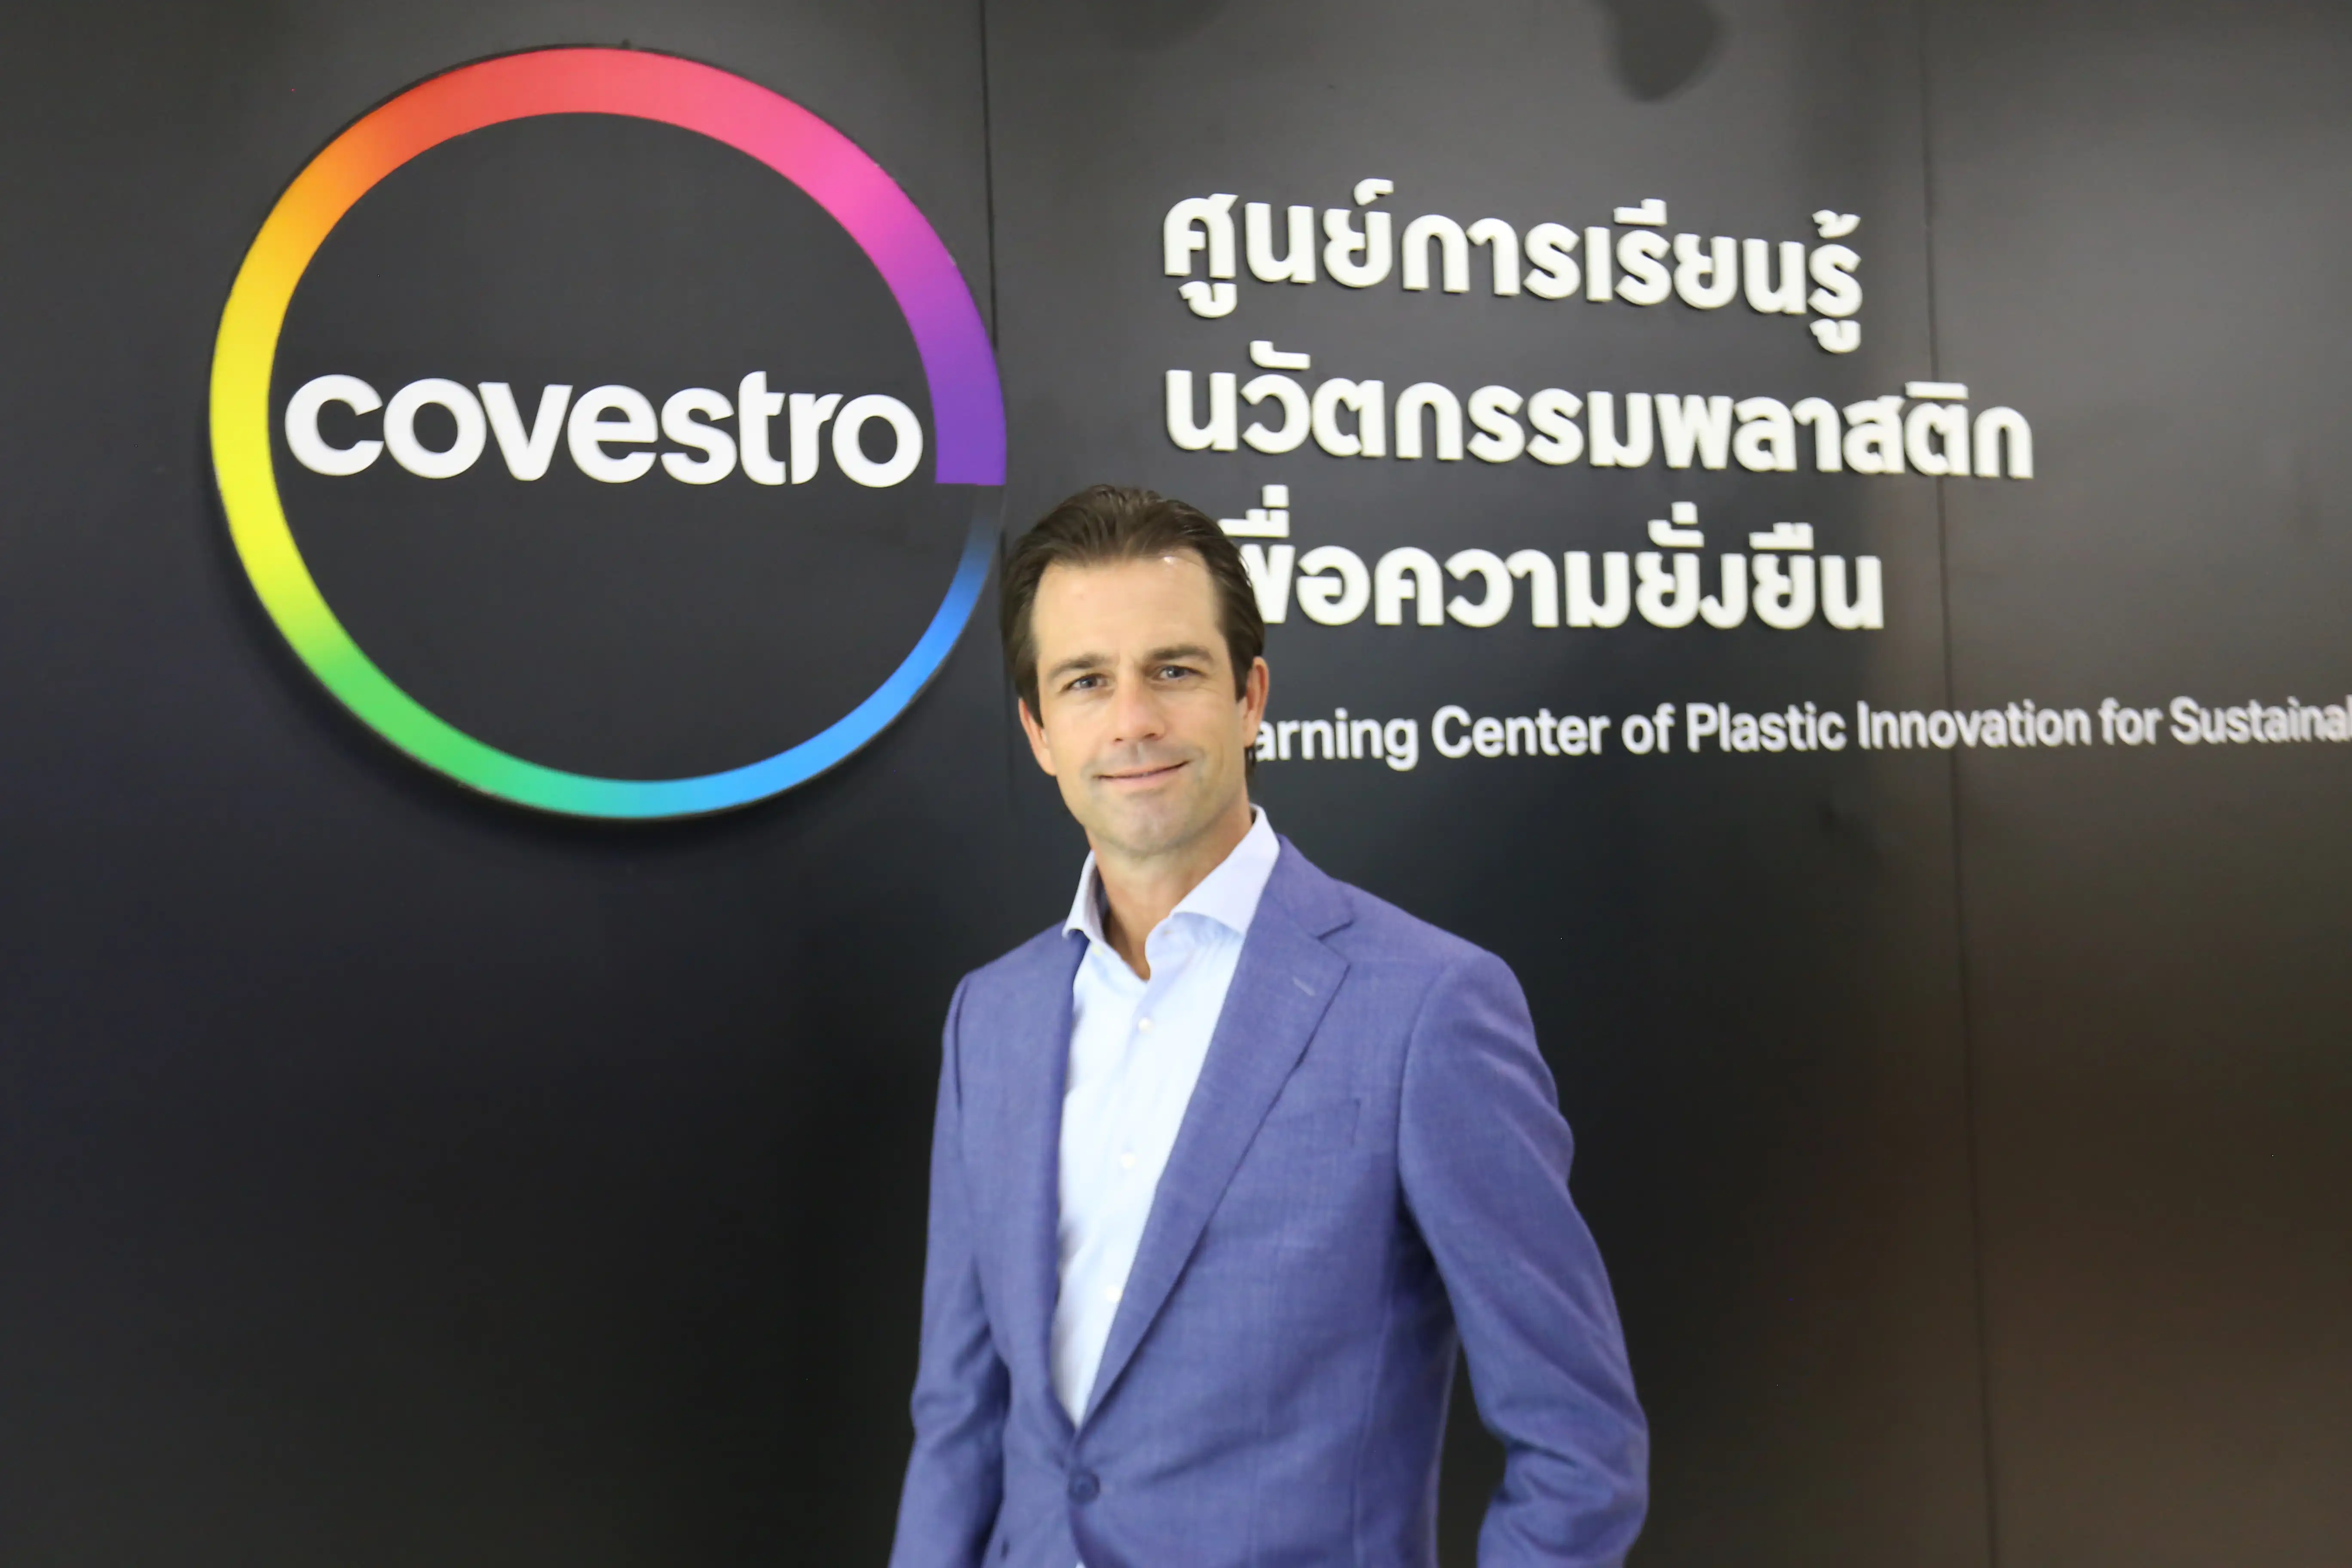 โคเวสโตร เปิดตัวศูนย์เรียนรู้นวัตกรรมพลาสติกยั่งยืน เพื่อเด็กไทยเรียนรู้จัดการขยะพลาสติก HealthServ